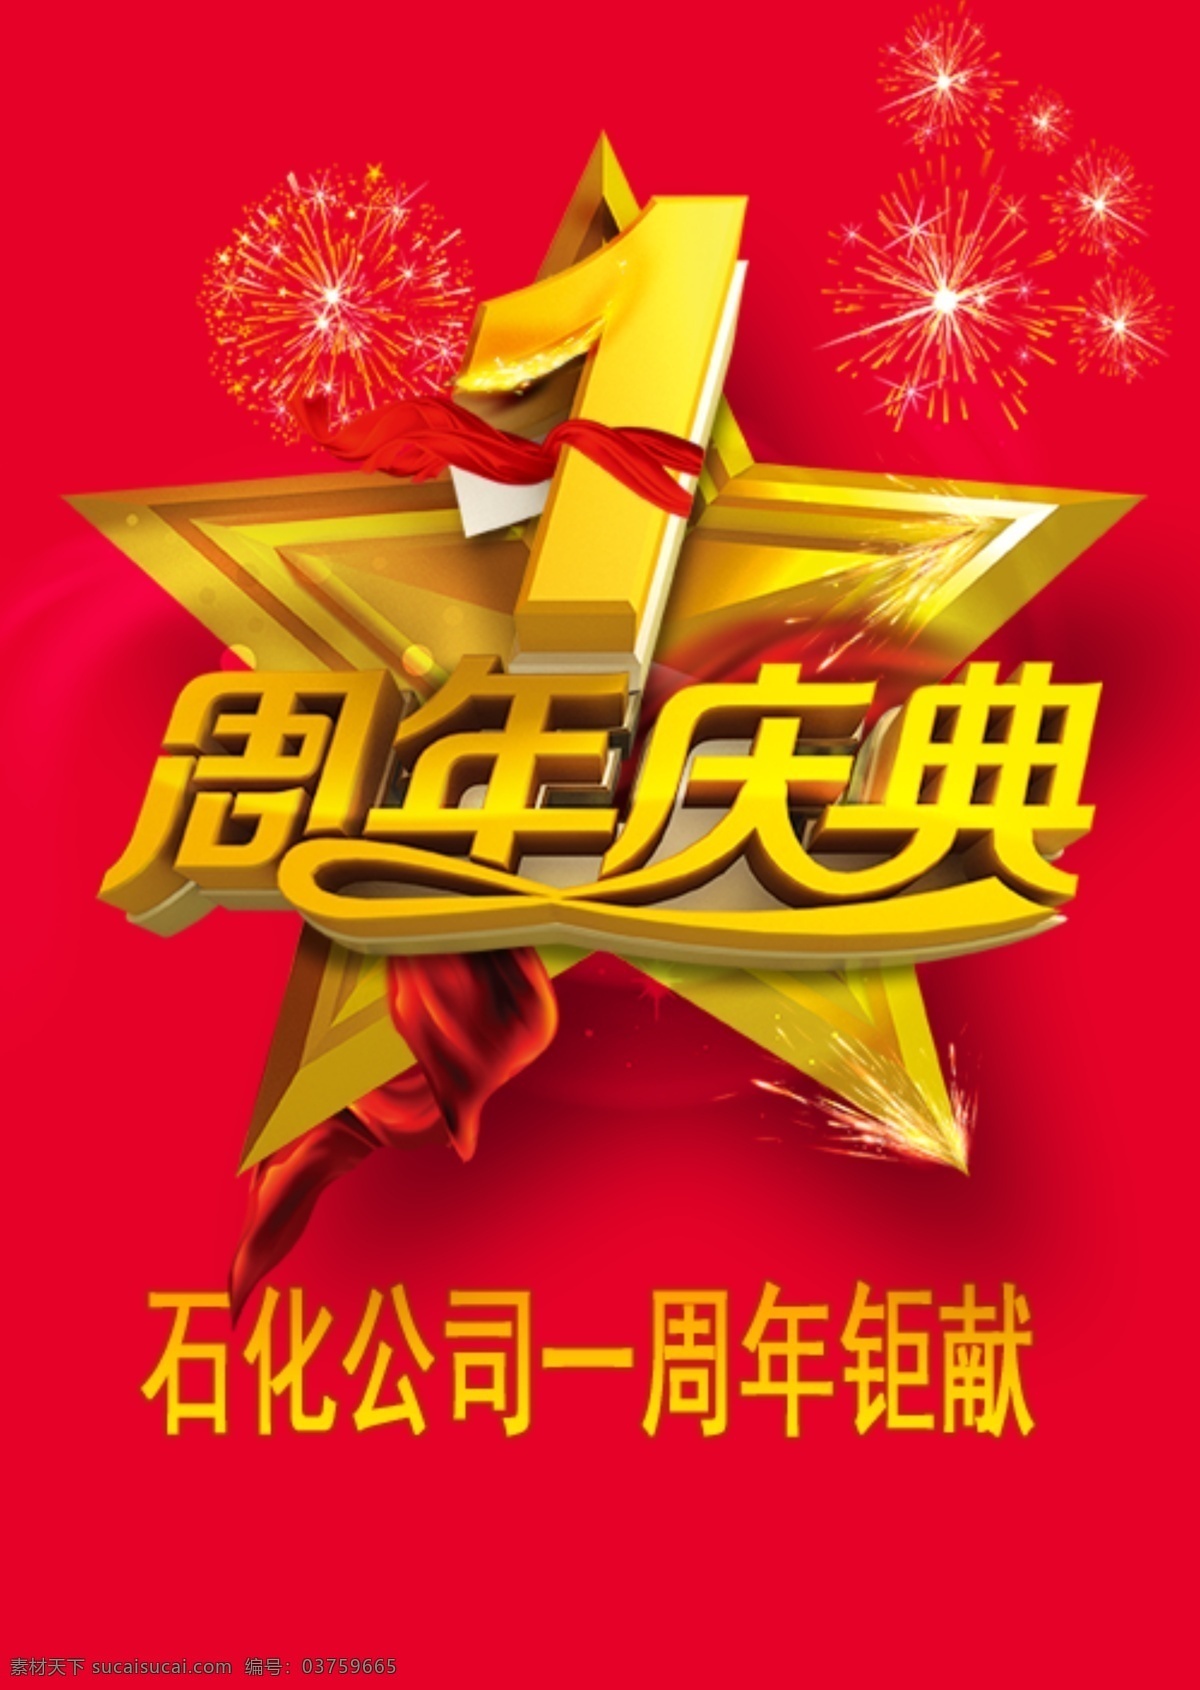 石化公司 中国石化 海报 周年庆 1周年庆 红色